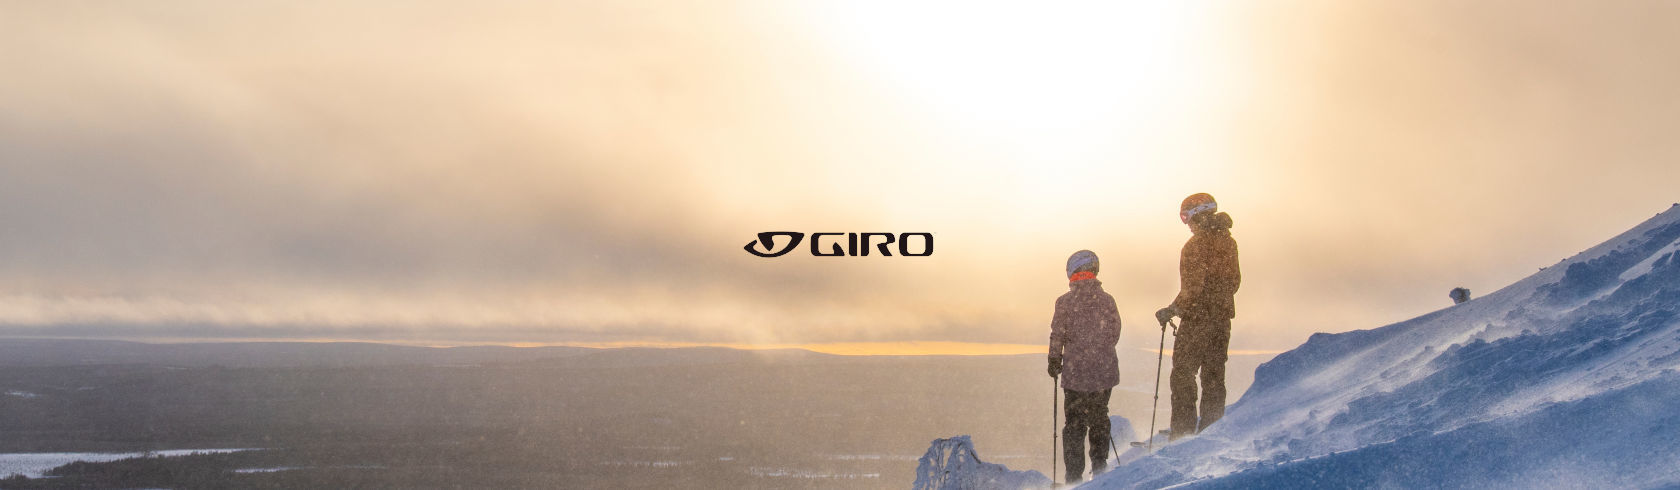 Giro brand logo